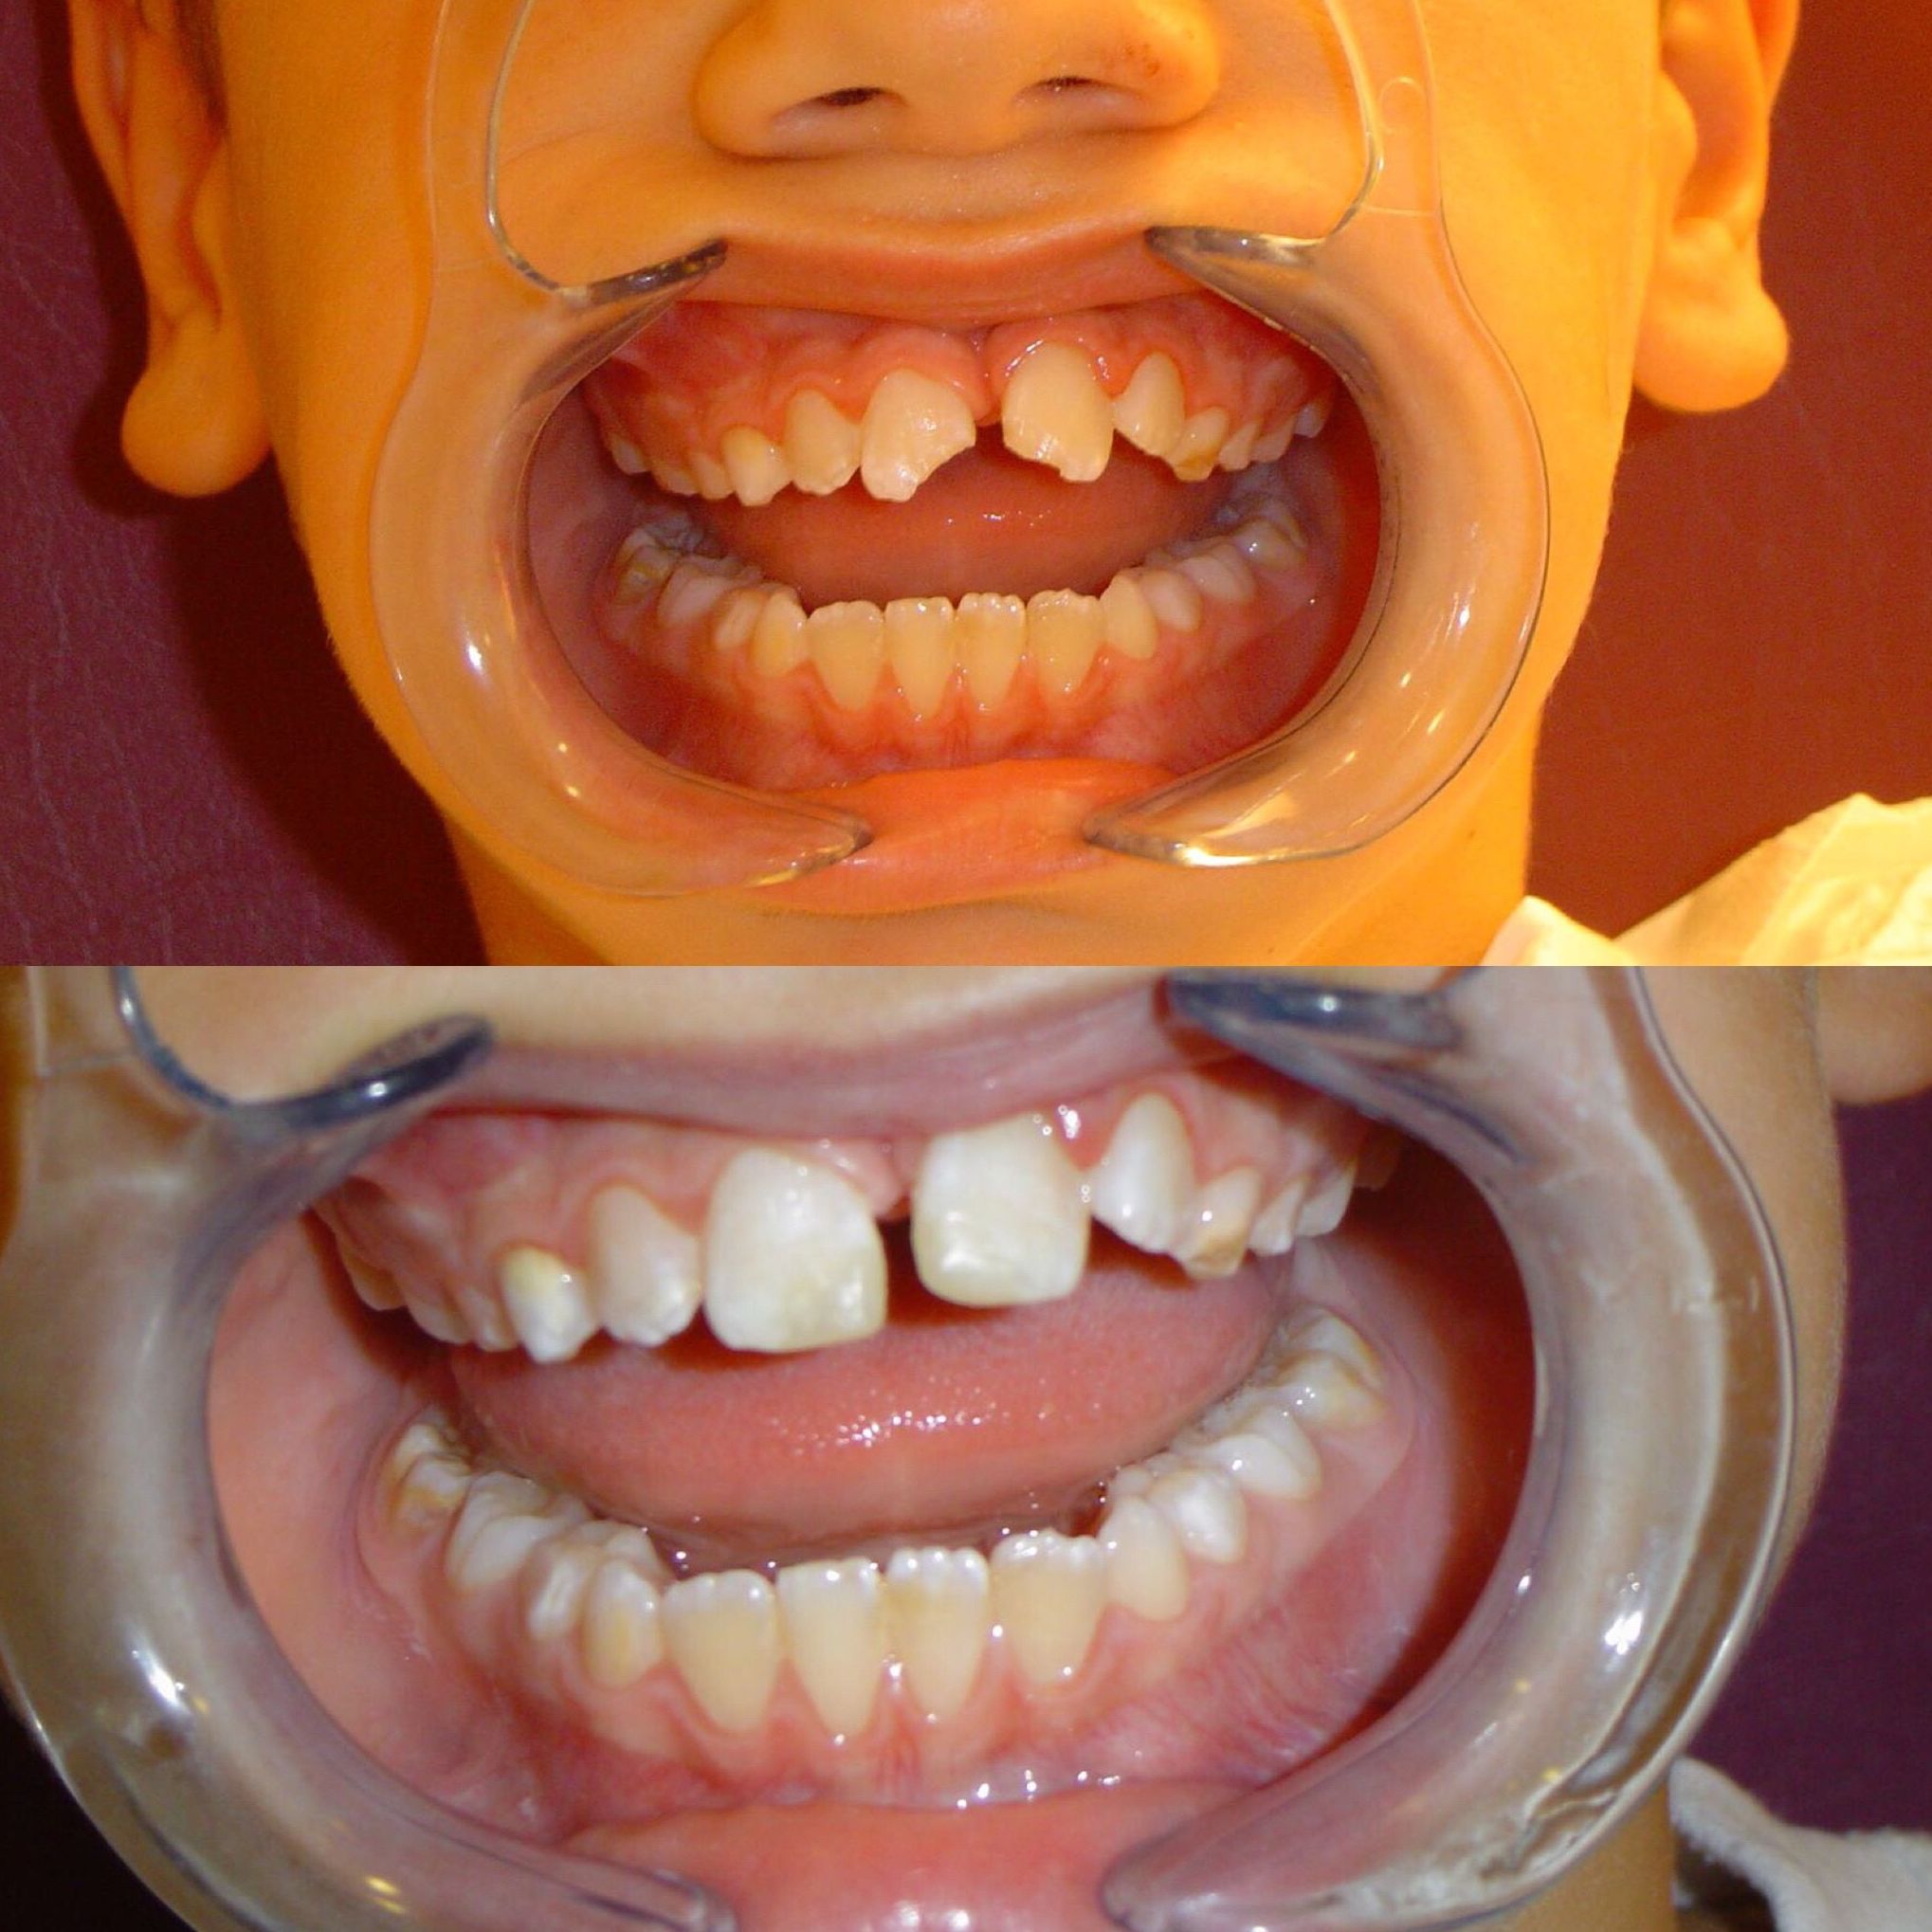 Boca de uno de nuestros pacientes antes y después del tratamiento